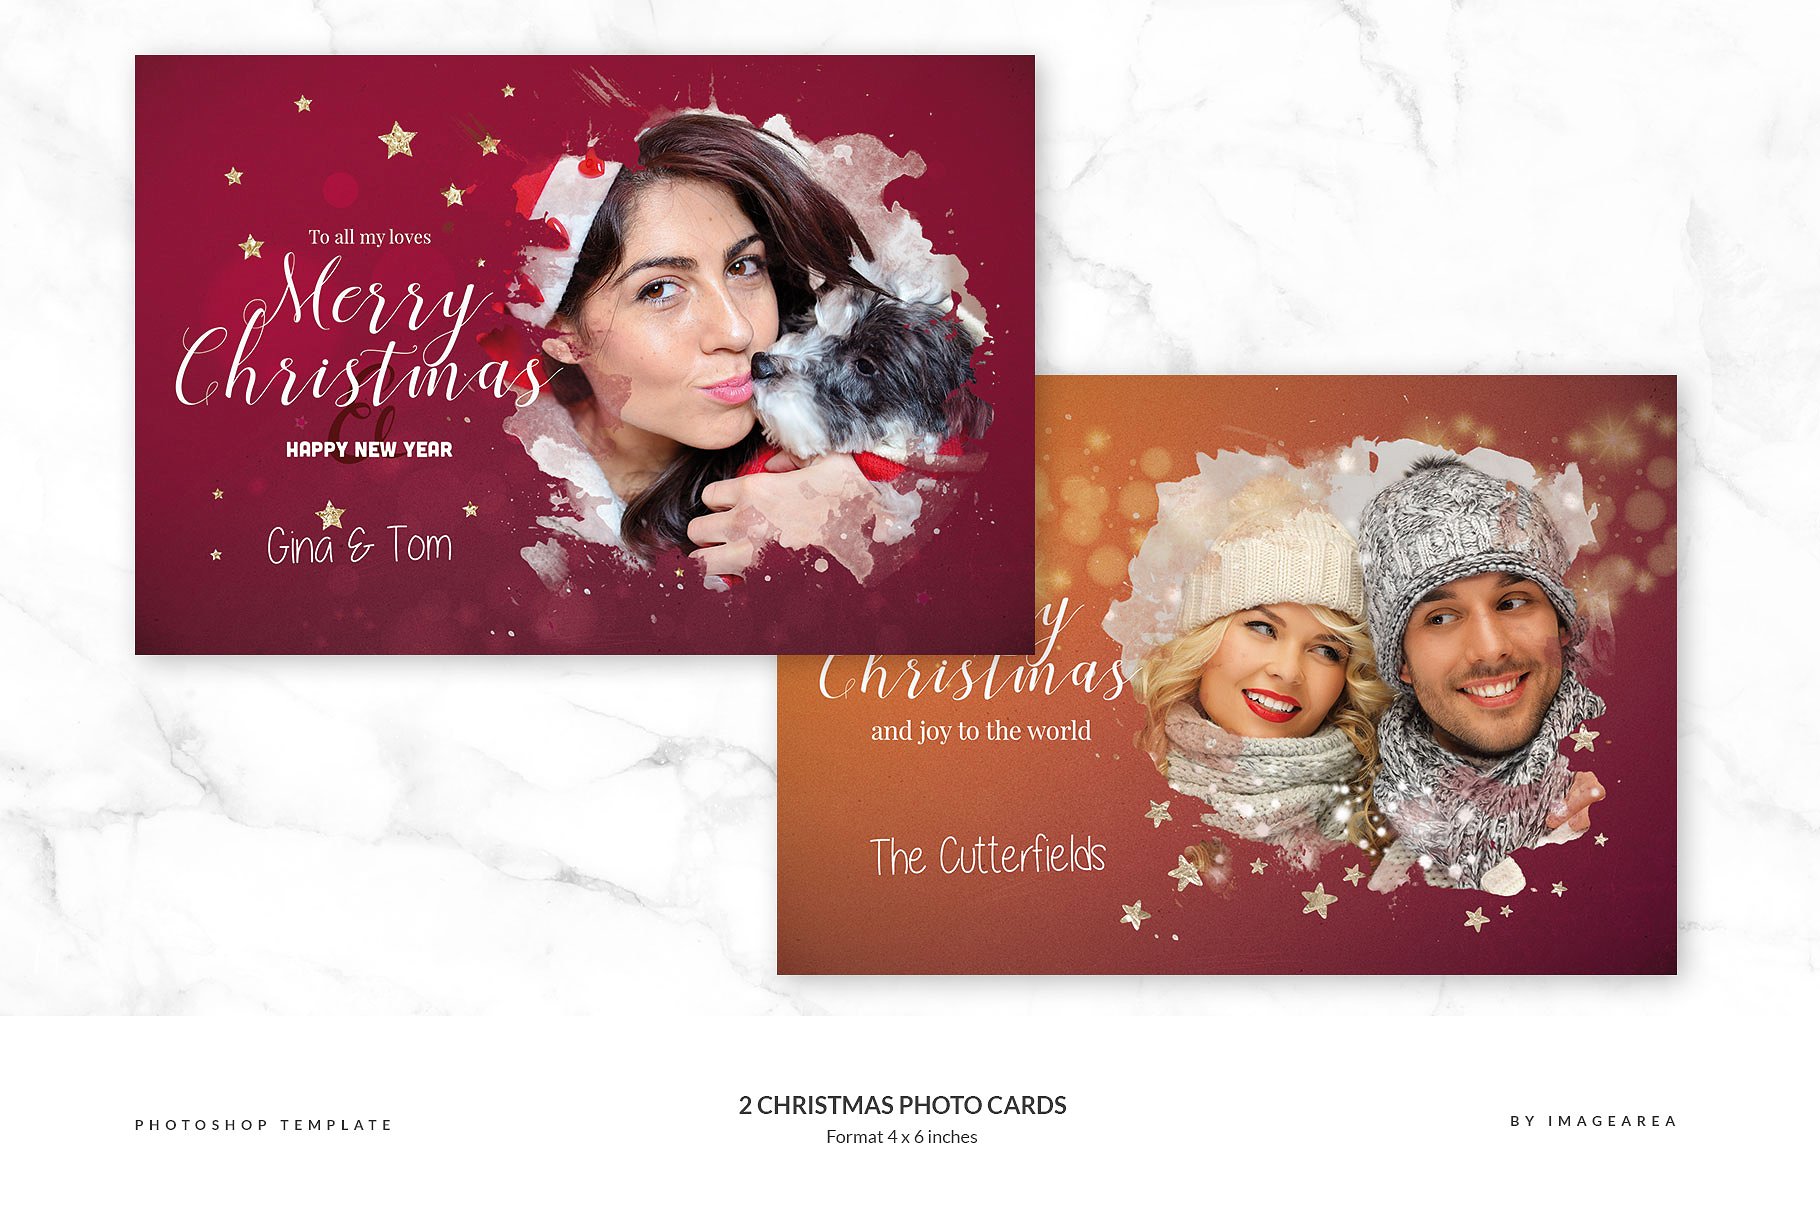 圣诞节主题照片贺卡模板 2 Christmas Photo Cards插图